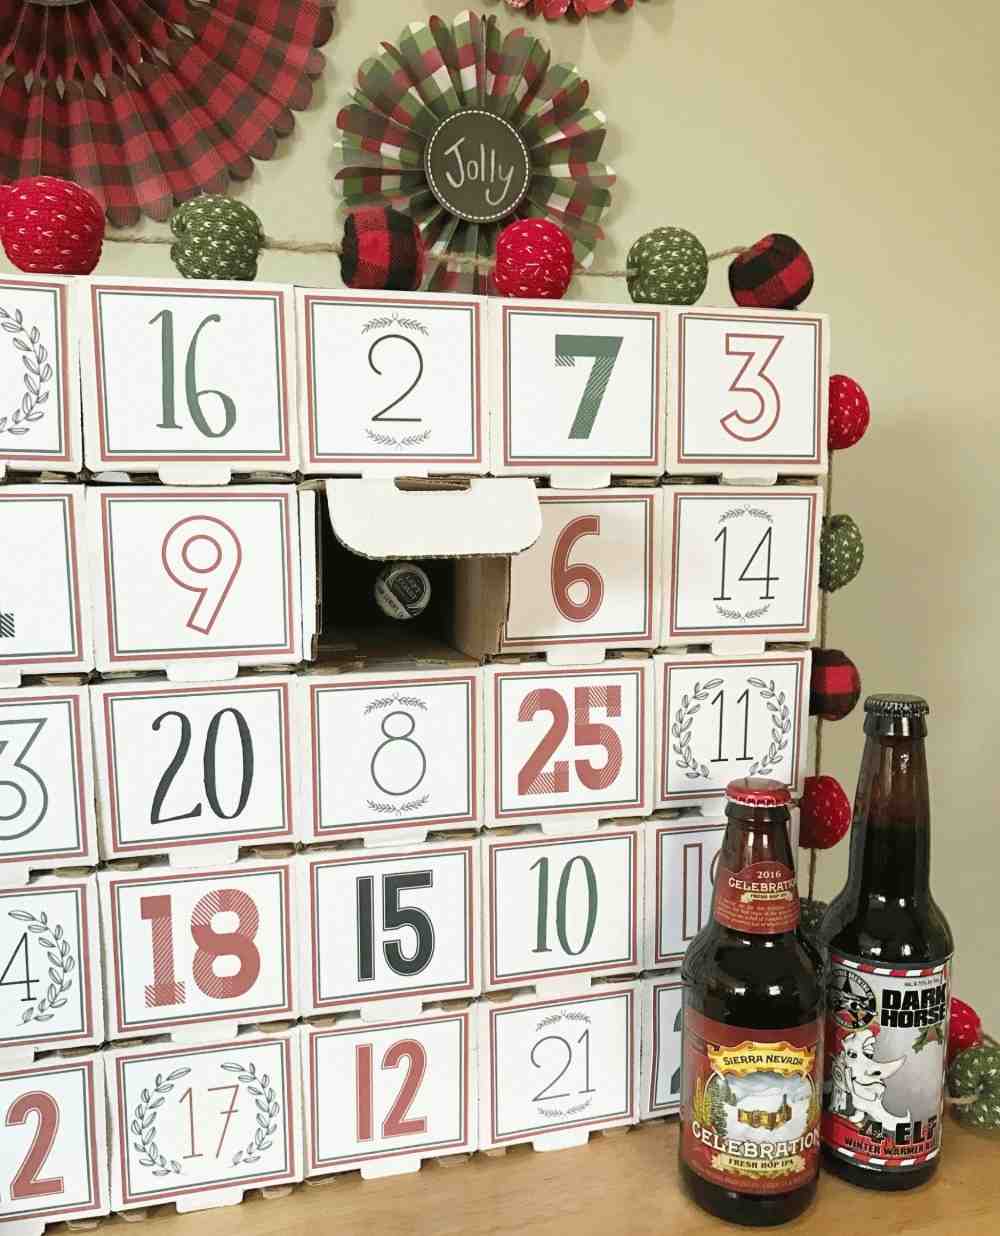 kreative diy bastelideen für bier adventskalender selbst gemacht aus karton und bierflaschen zu weihnachten